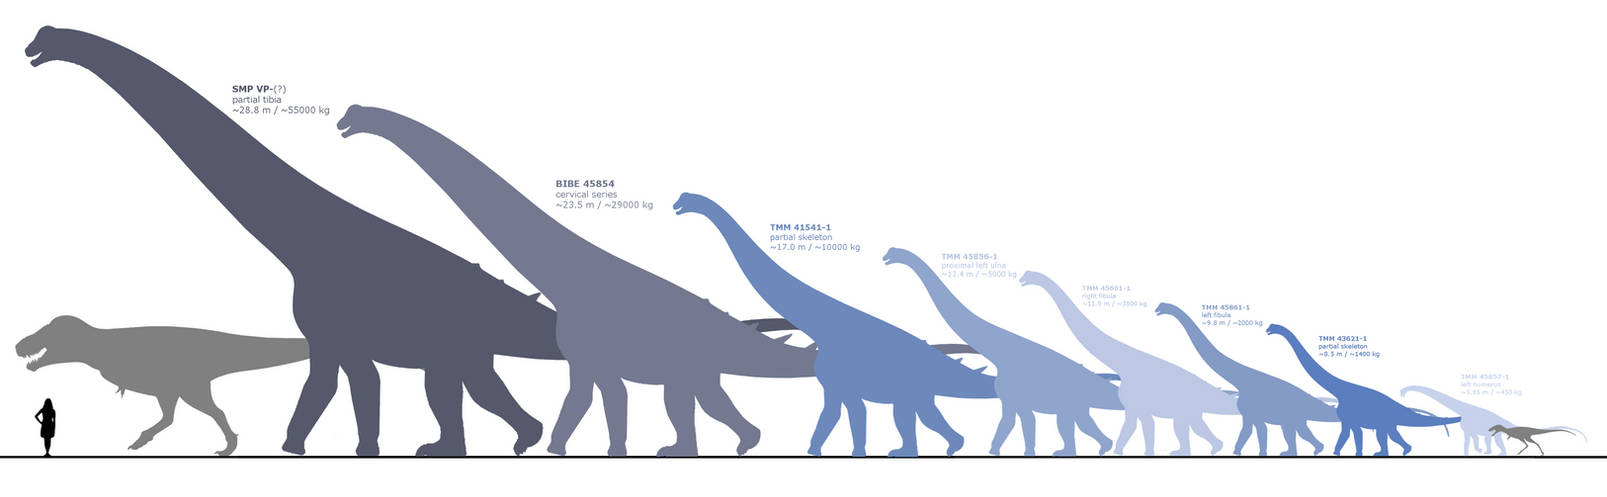 Динозавры развитие. Alamosaurus sanjuanensis. Сравнение размеров динозавров. Динозавры по сравнению с человеком. Размеры динозавров.